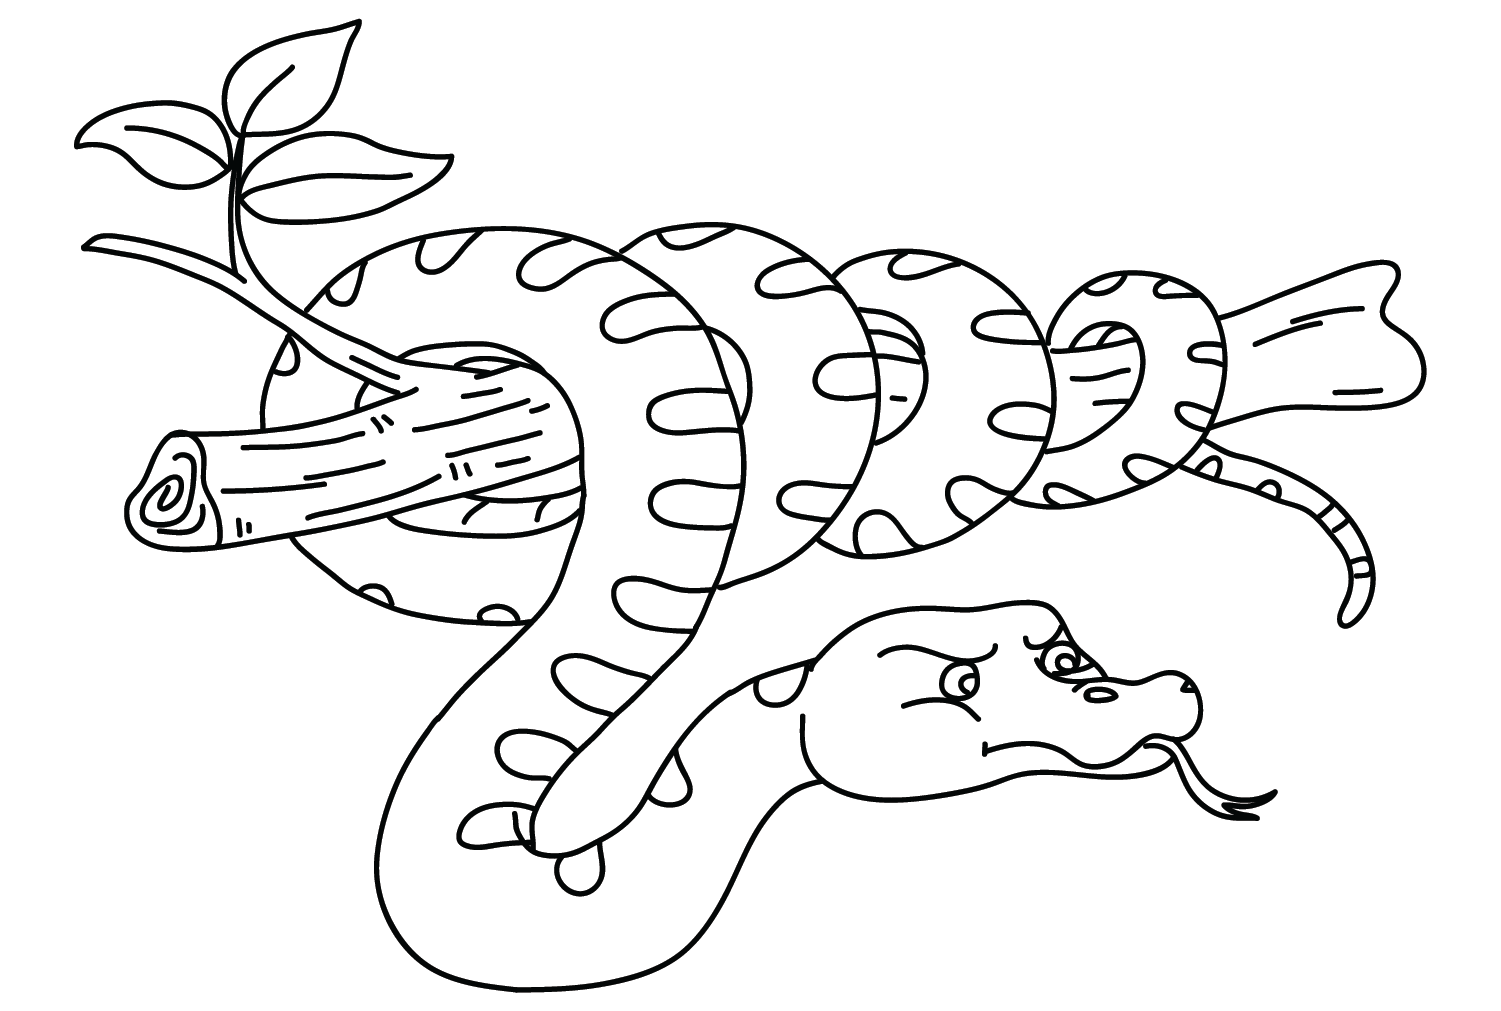 Imagem do Anaconda para colorir do Anaconda